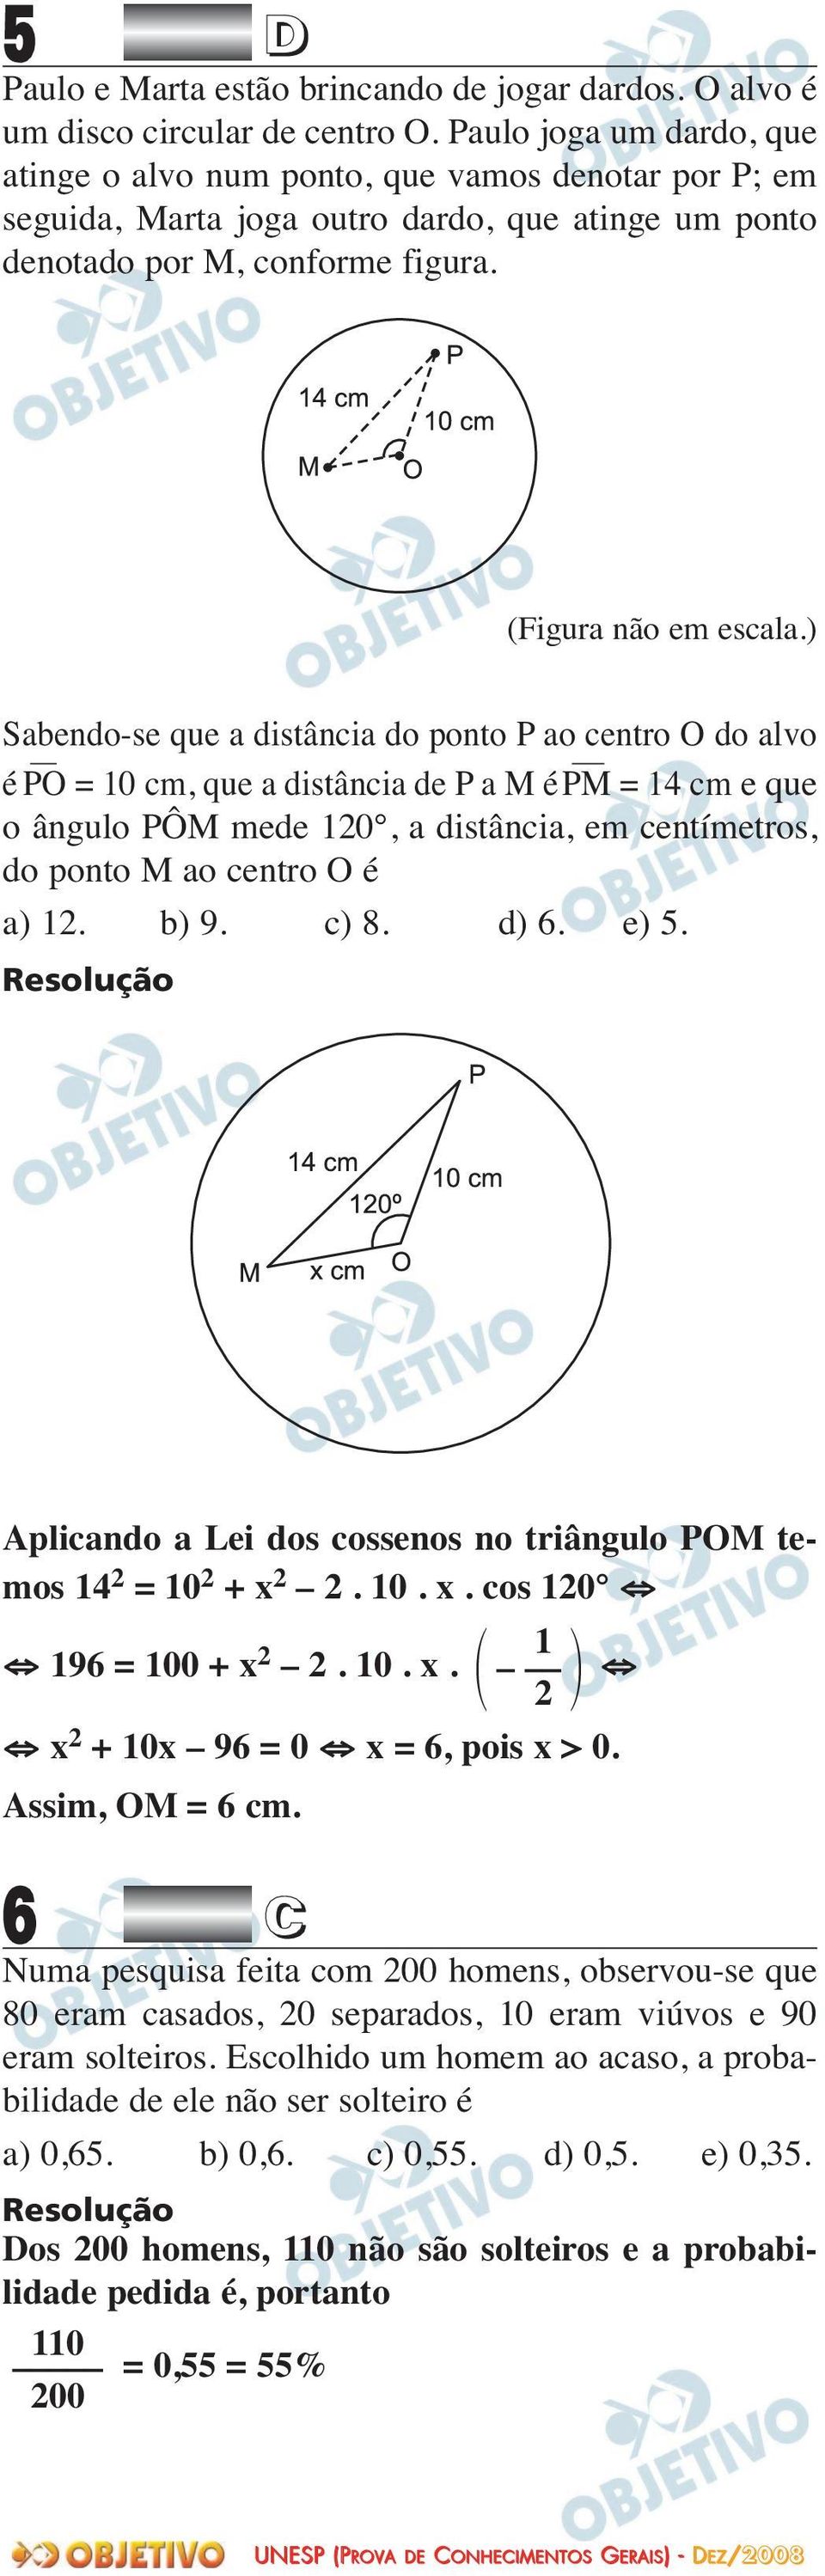 ) Sabendo-se que a distância do ponto P ao centro O do alvo é PO = 10 cm, que a distância de P a M é PM = 14 cm e que o ângulo PÔM mede 120, a distância, em centímetros, do ponto M ao centro O é a)